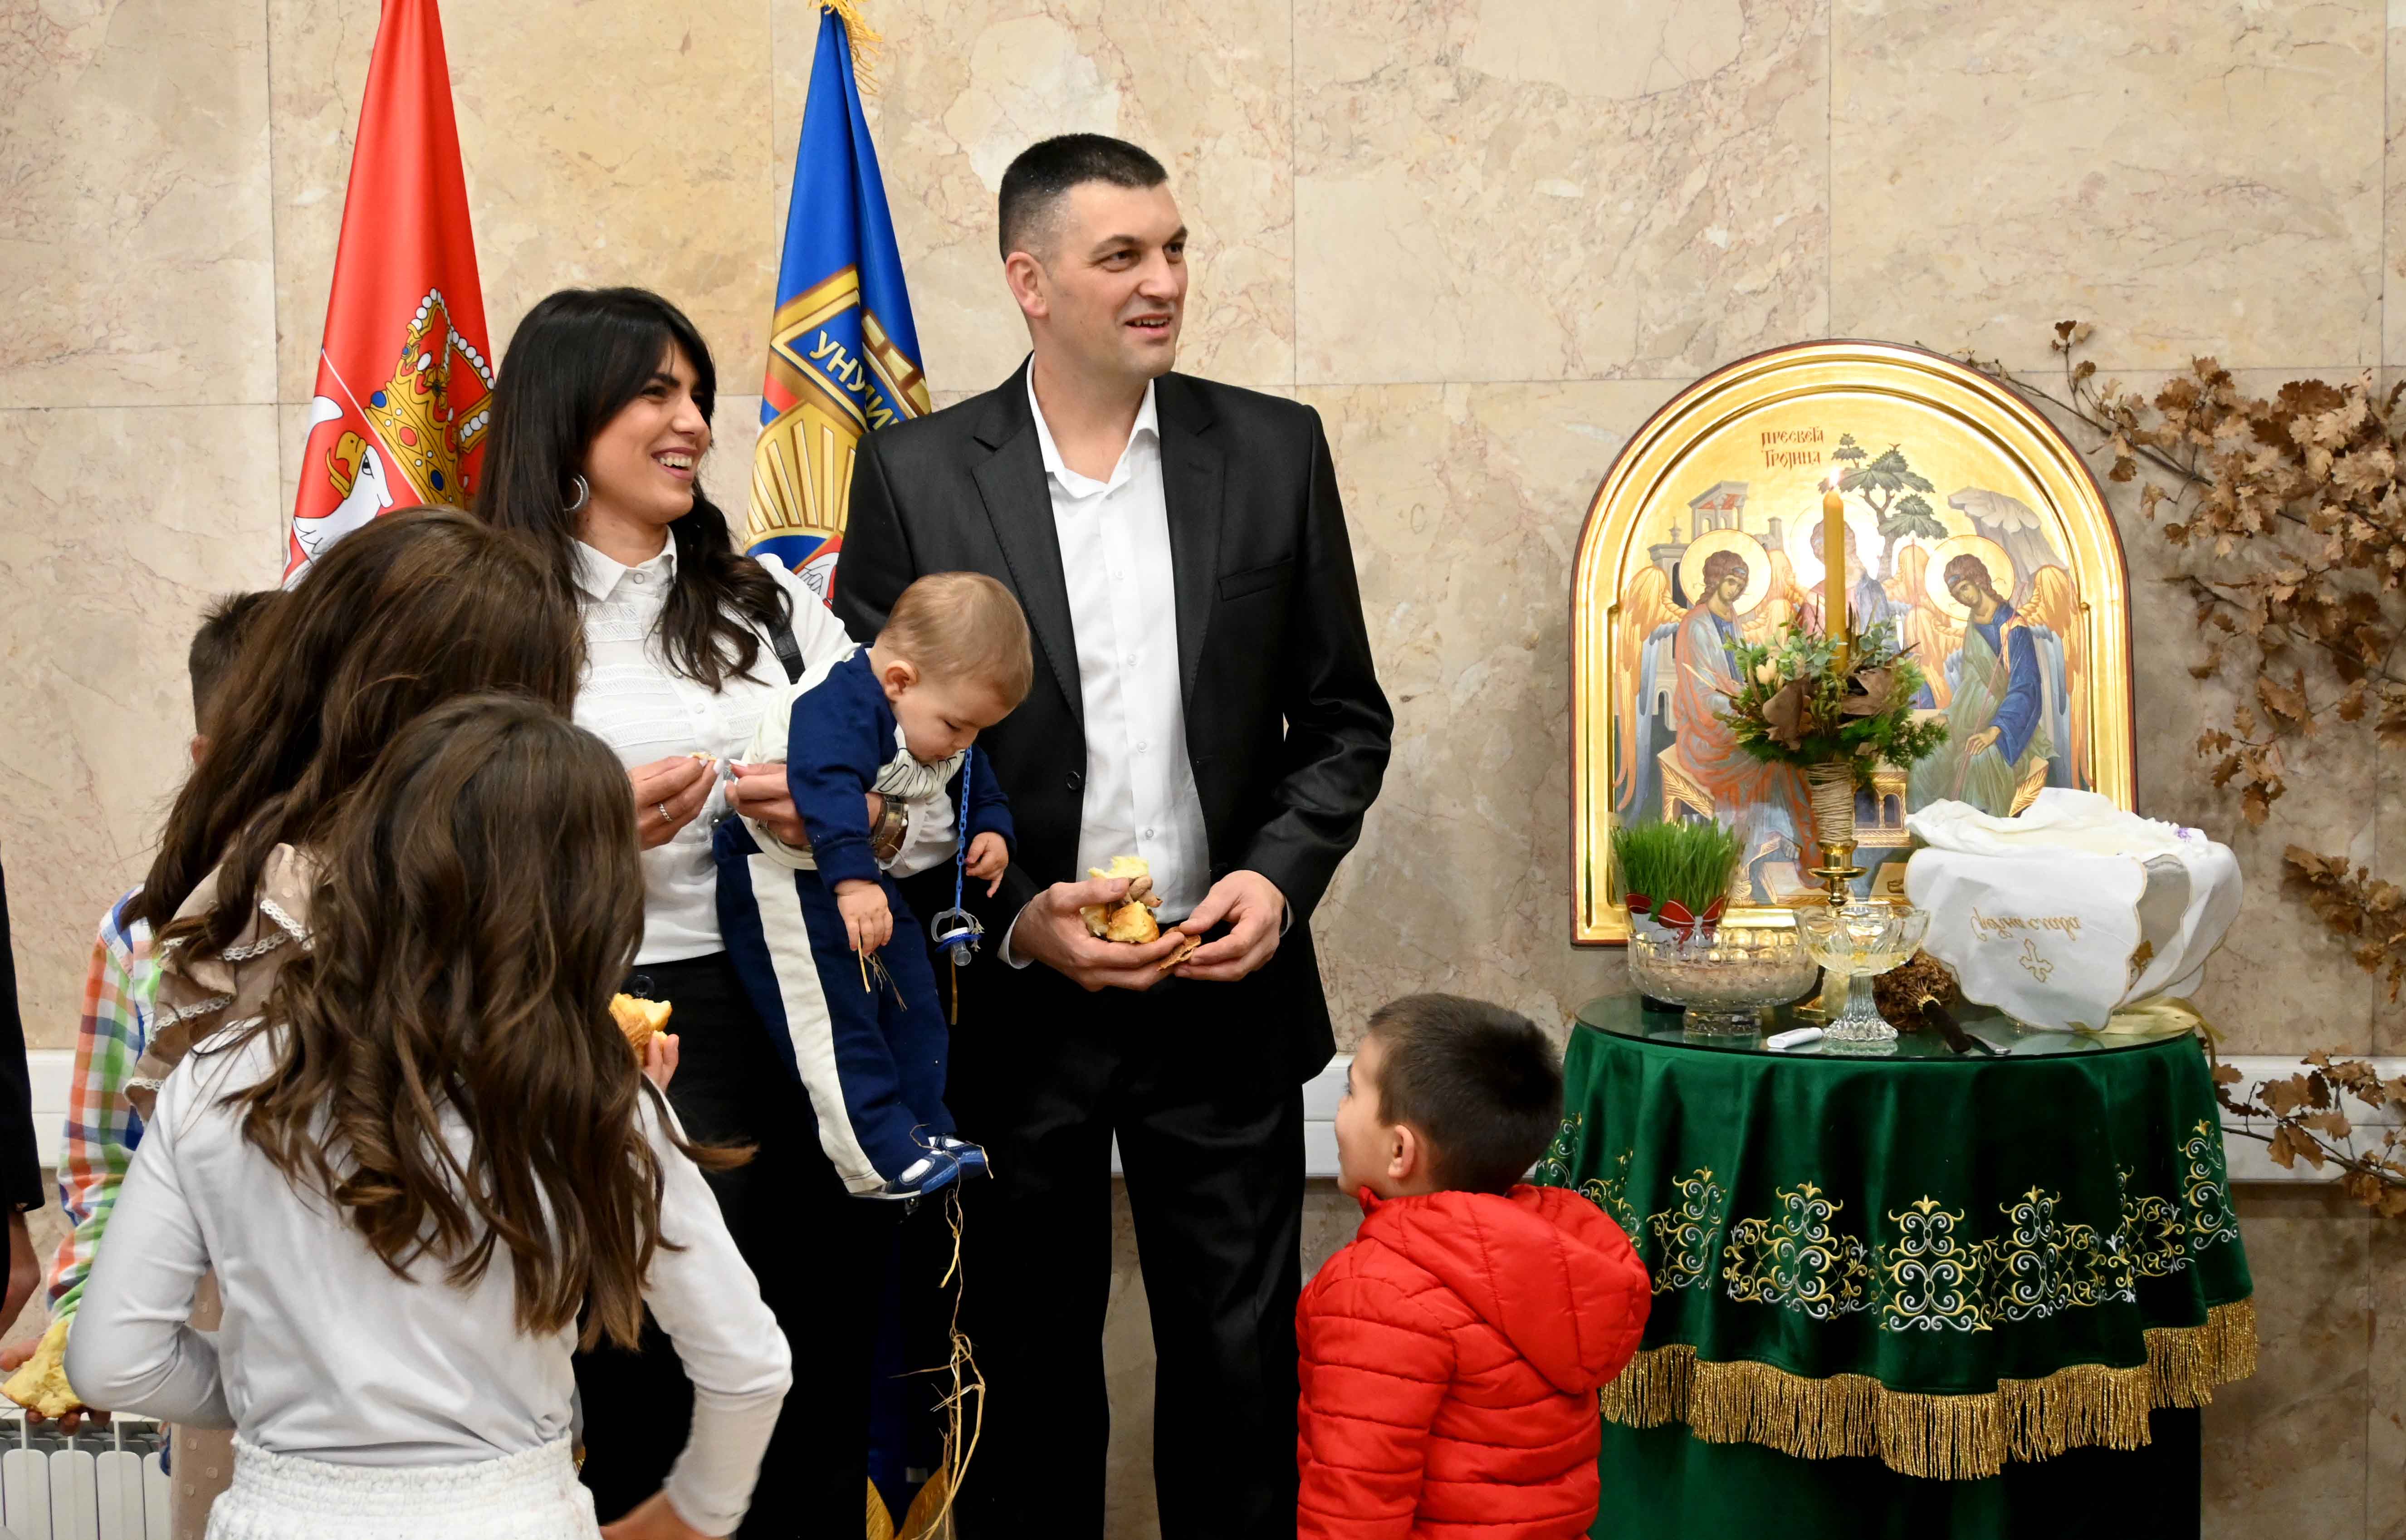 Министар Братислав Гашић угостио је породицу Бојане Ћурчић, помоћника командира Полицијске станице Нова Варош, мајку петоро деце